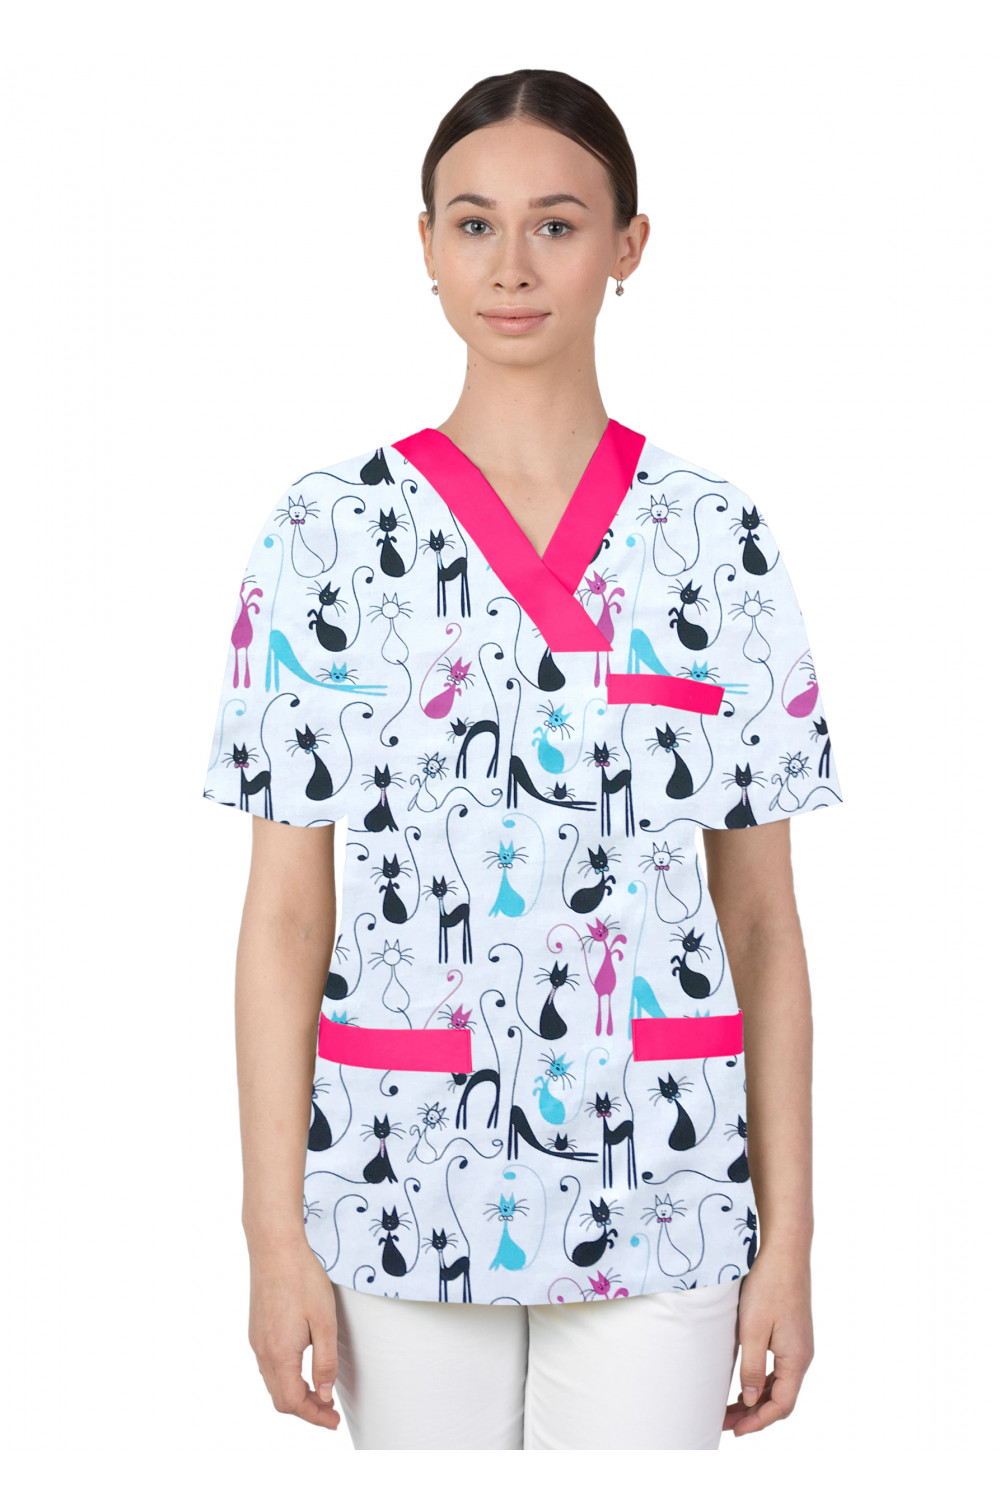 Bluza medyczna we wzorki kolorowa damska M-074G kotki filemony różowo niebieskie na białym tle